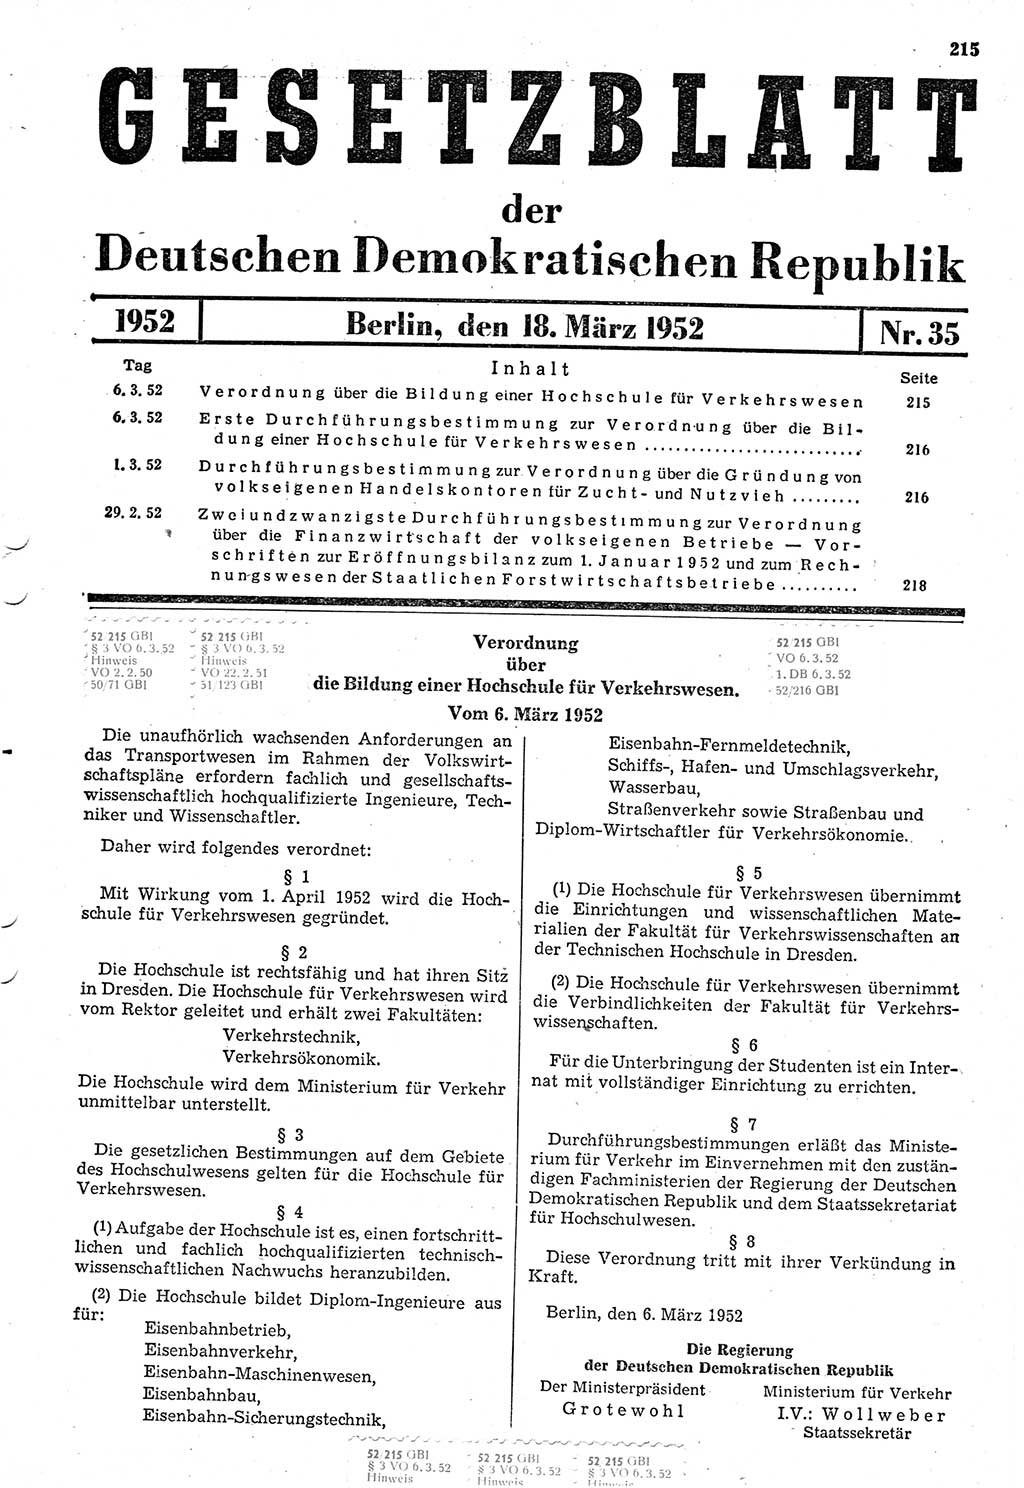 Gesetzblatt (GBl.) der Deutschen Demokratischen Republik (DDR) 1952, Seite 215 (GBl. DDR 1952, S. 215)